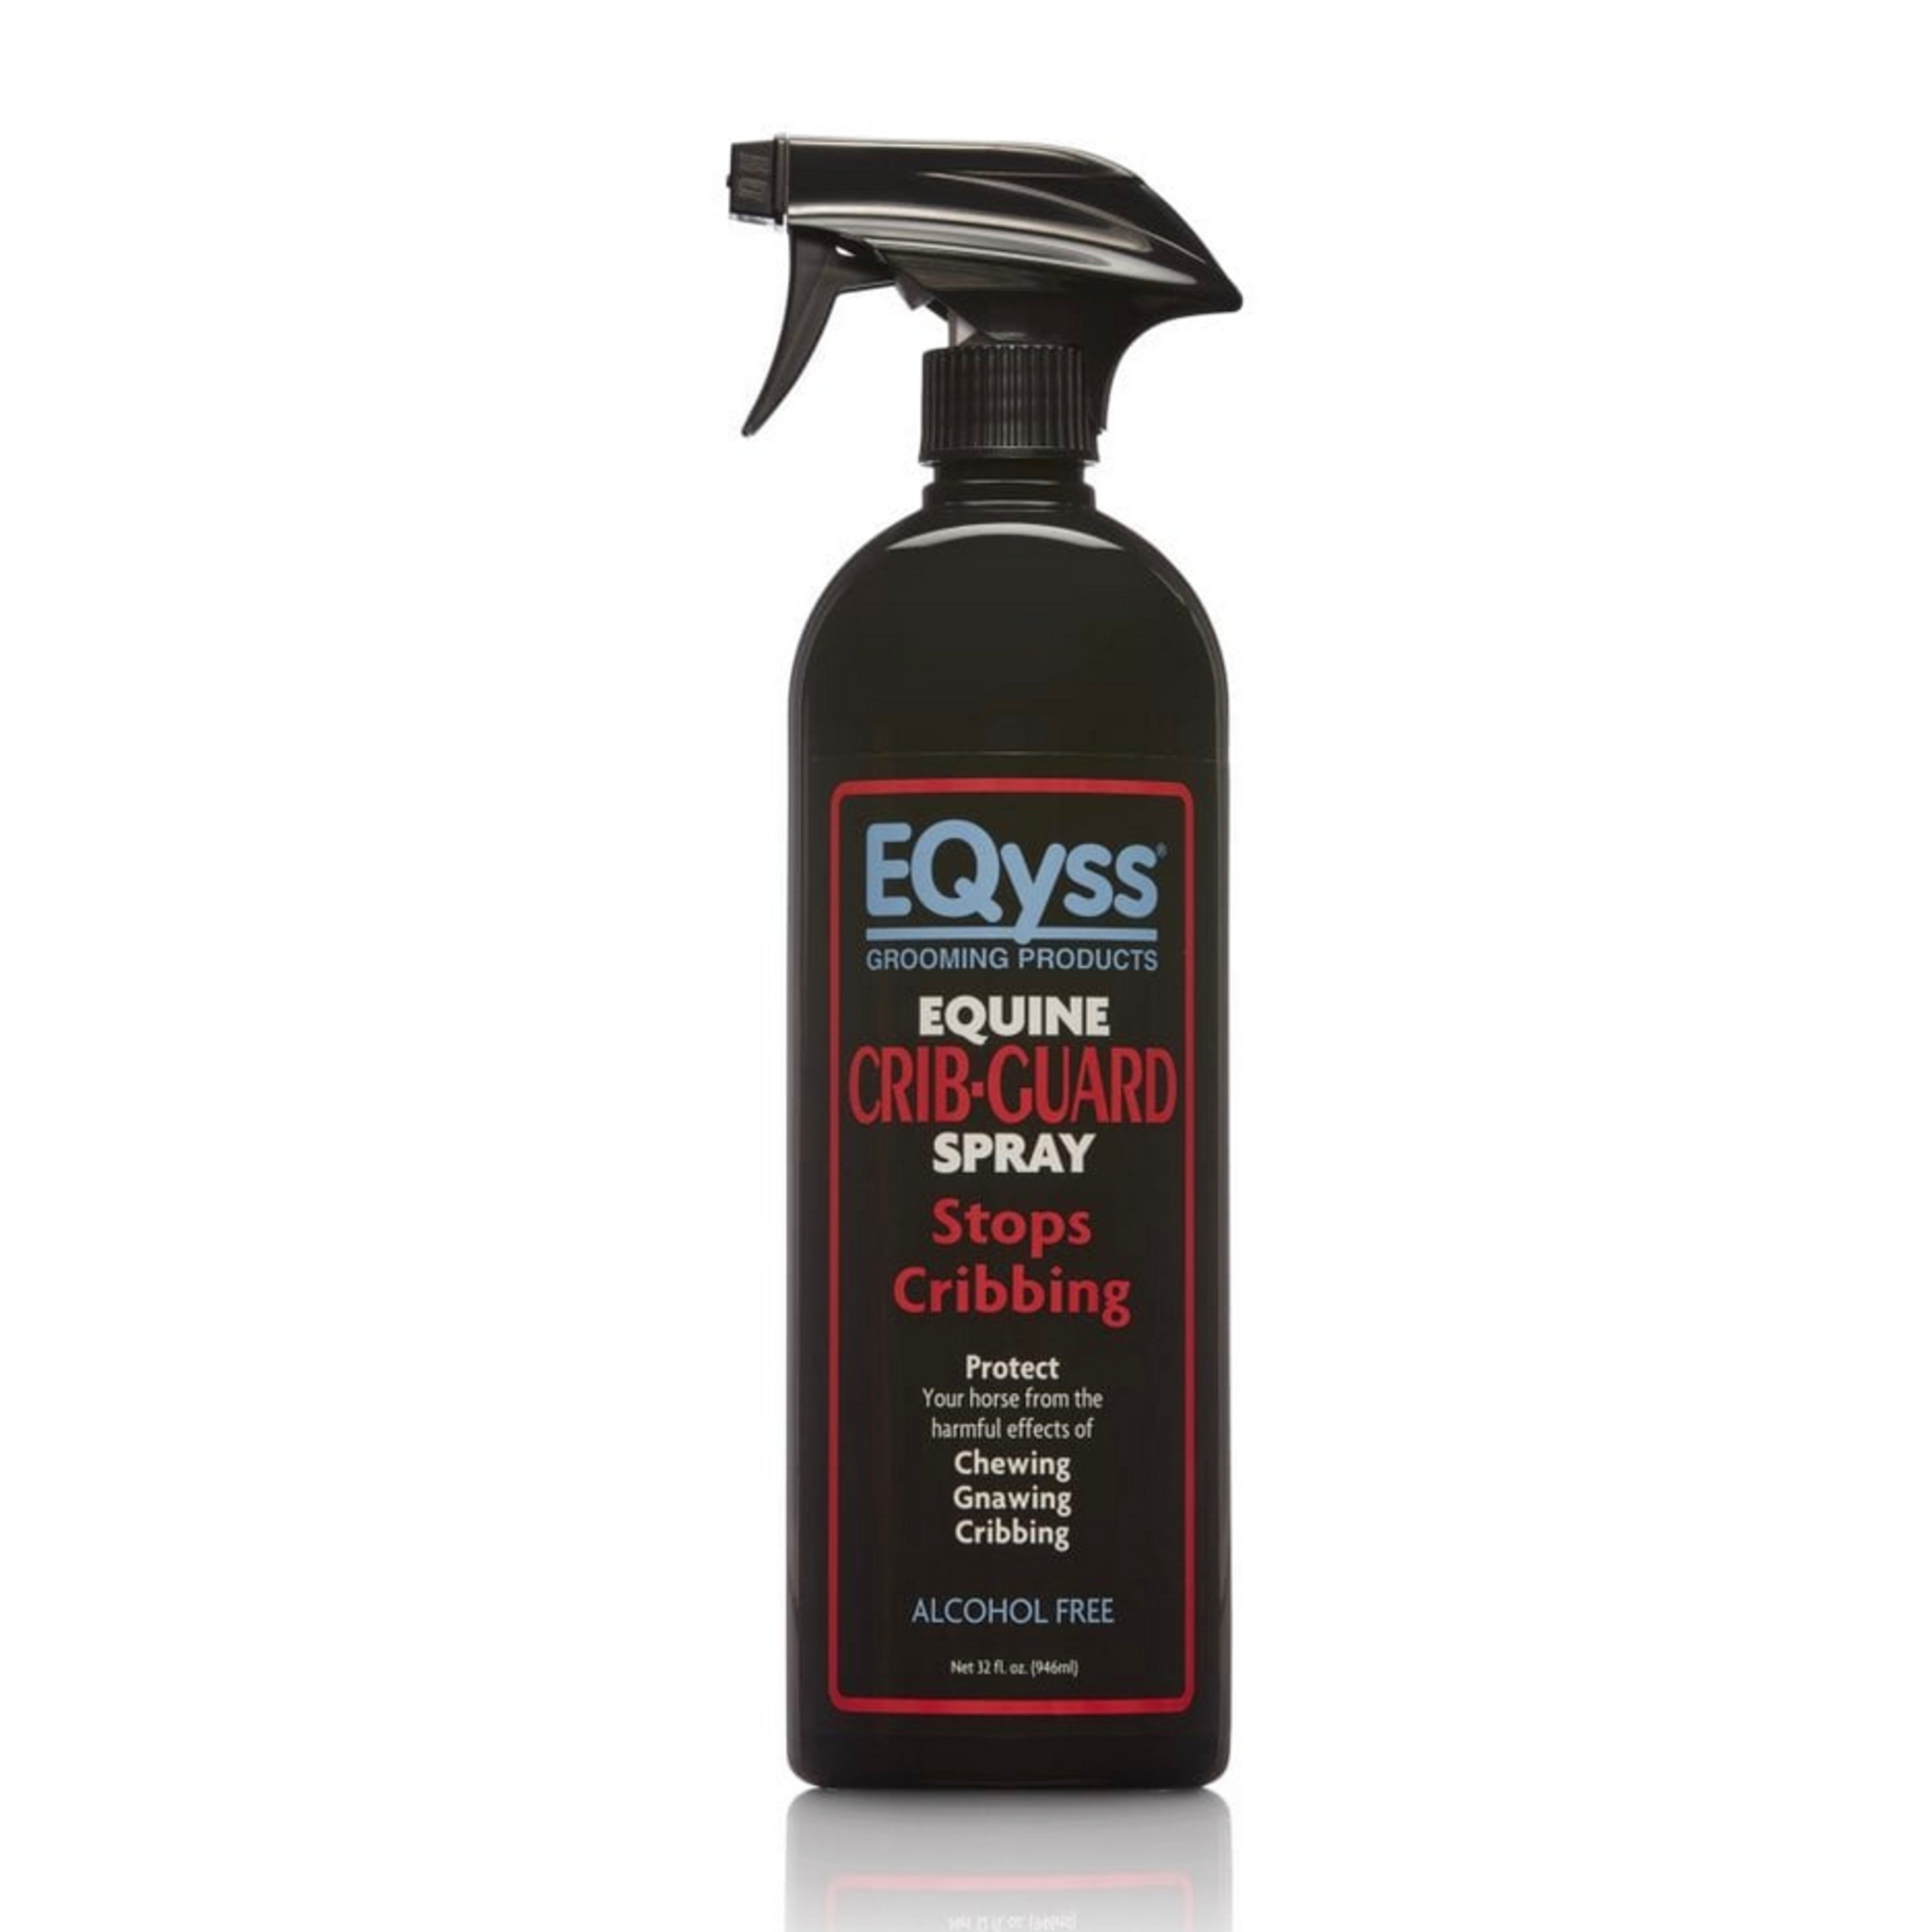 Eqyss Crib Guard Spray 32 oz